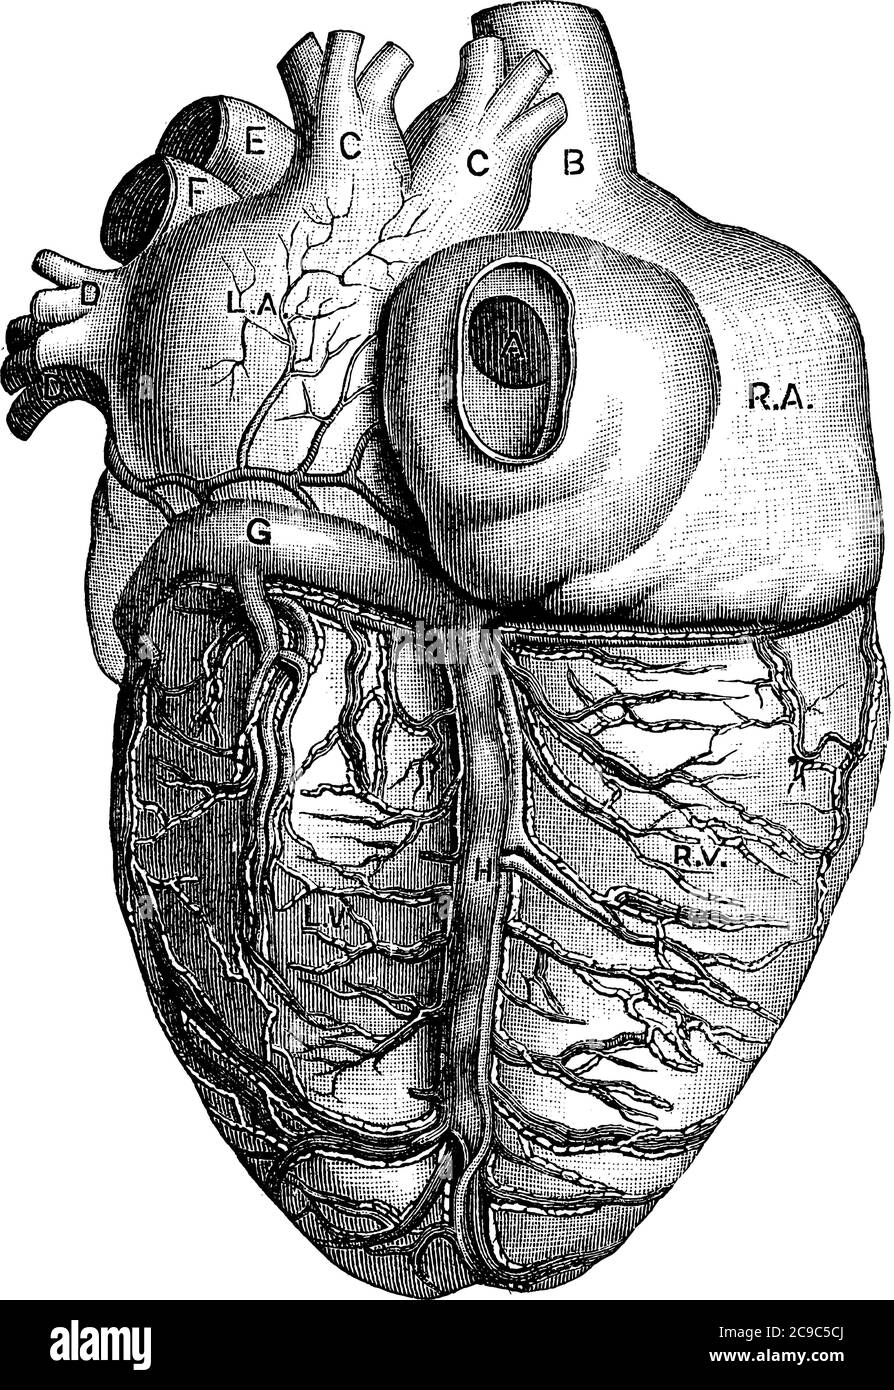 La vista posteriore del cuore, con le parti, L.A., auricolo sinistro; R.A., auricolo destro; R.V., ventricolo destro; A, apertura della vena cava inferiore; Illustrazione Vettoriale